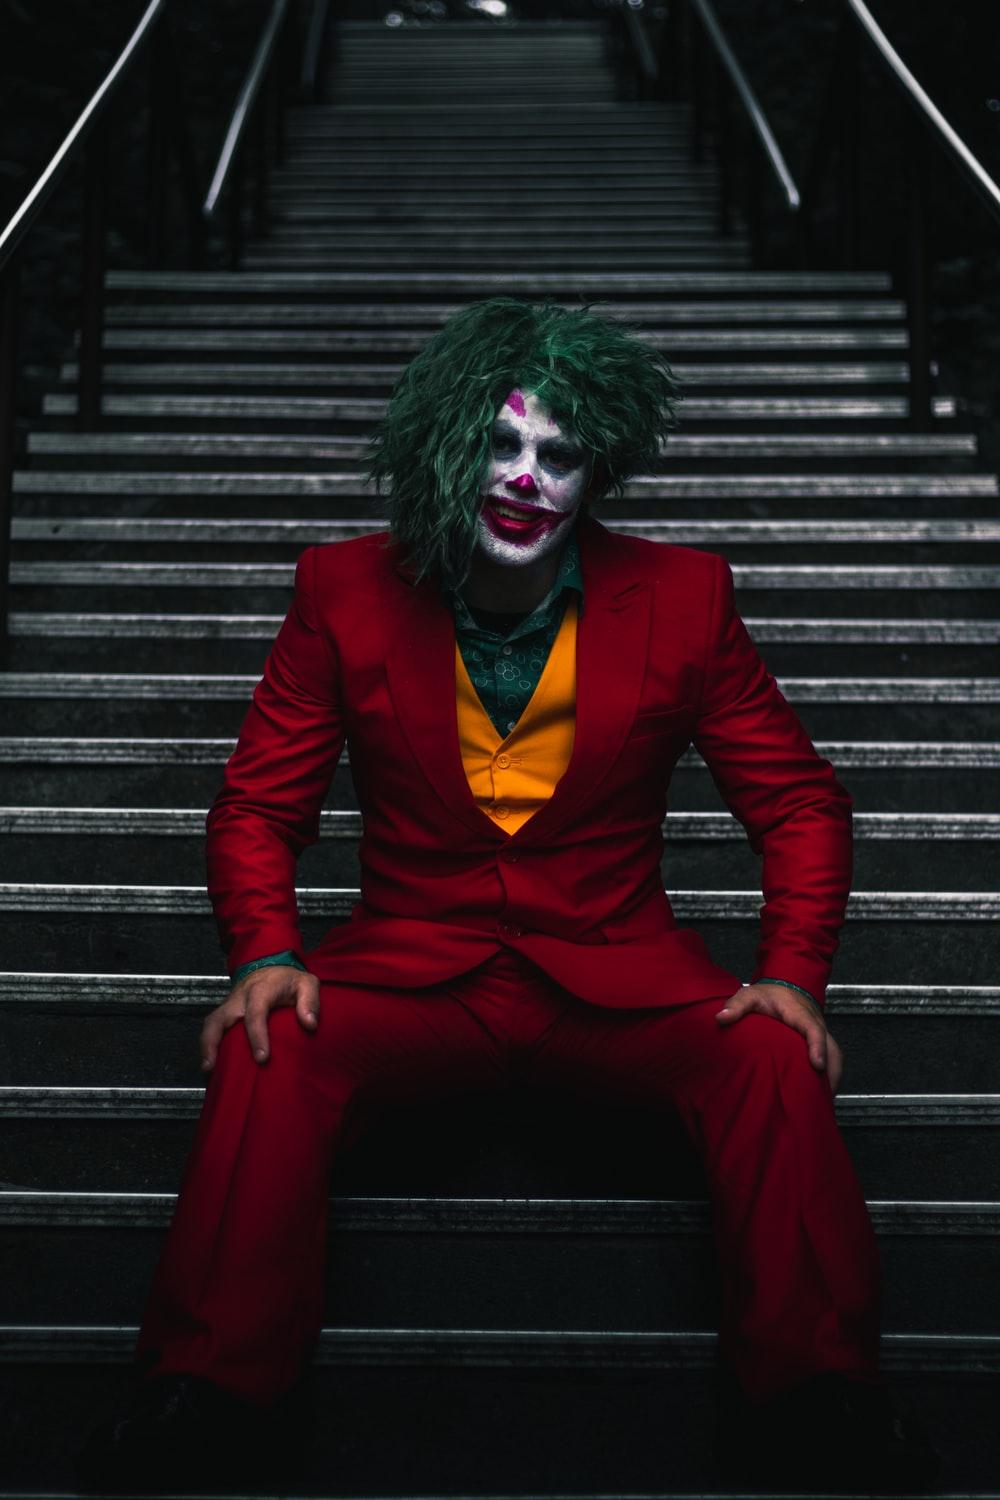 Joker on stairs photo